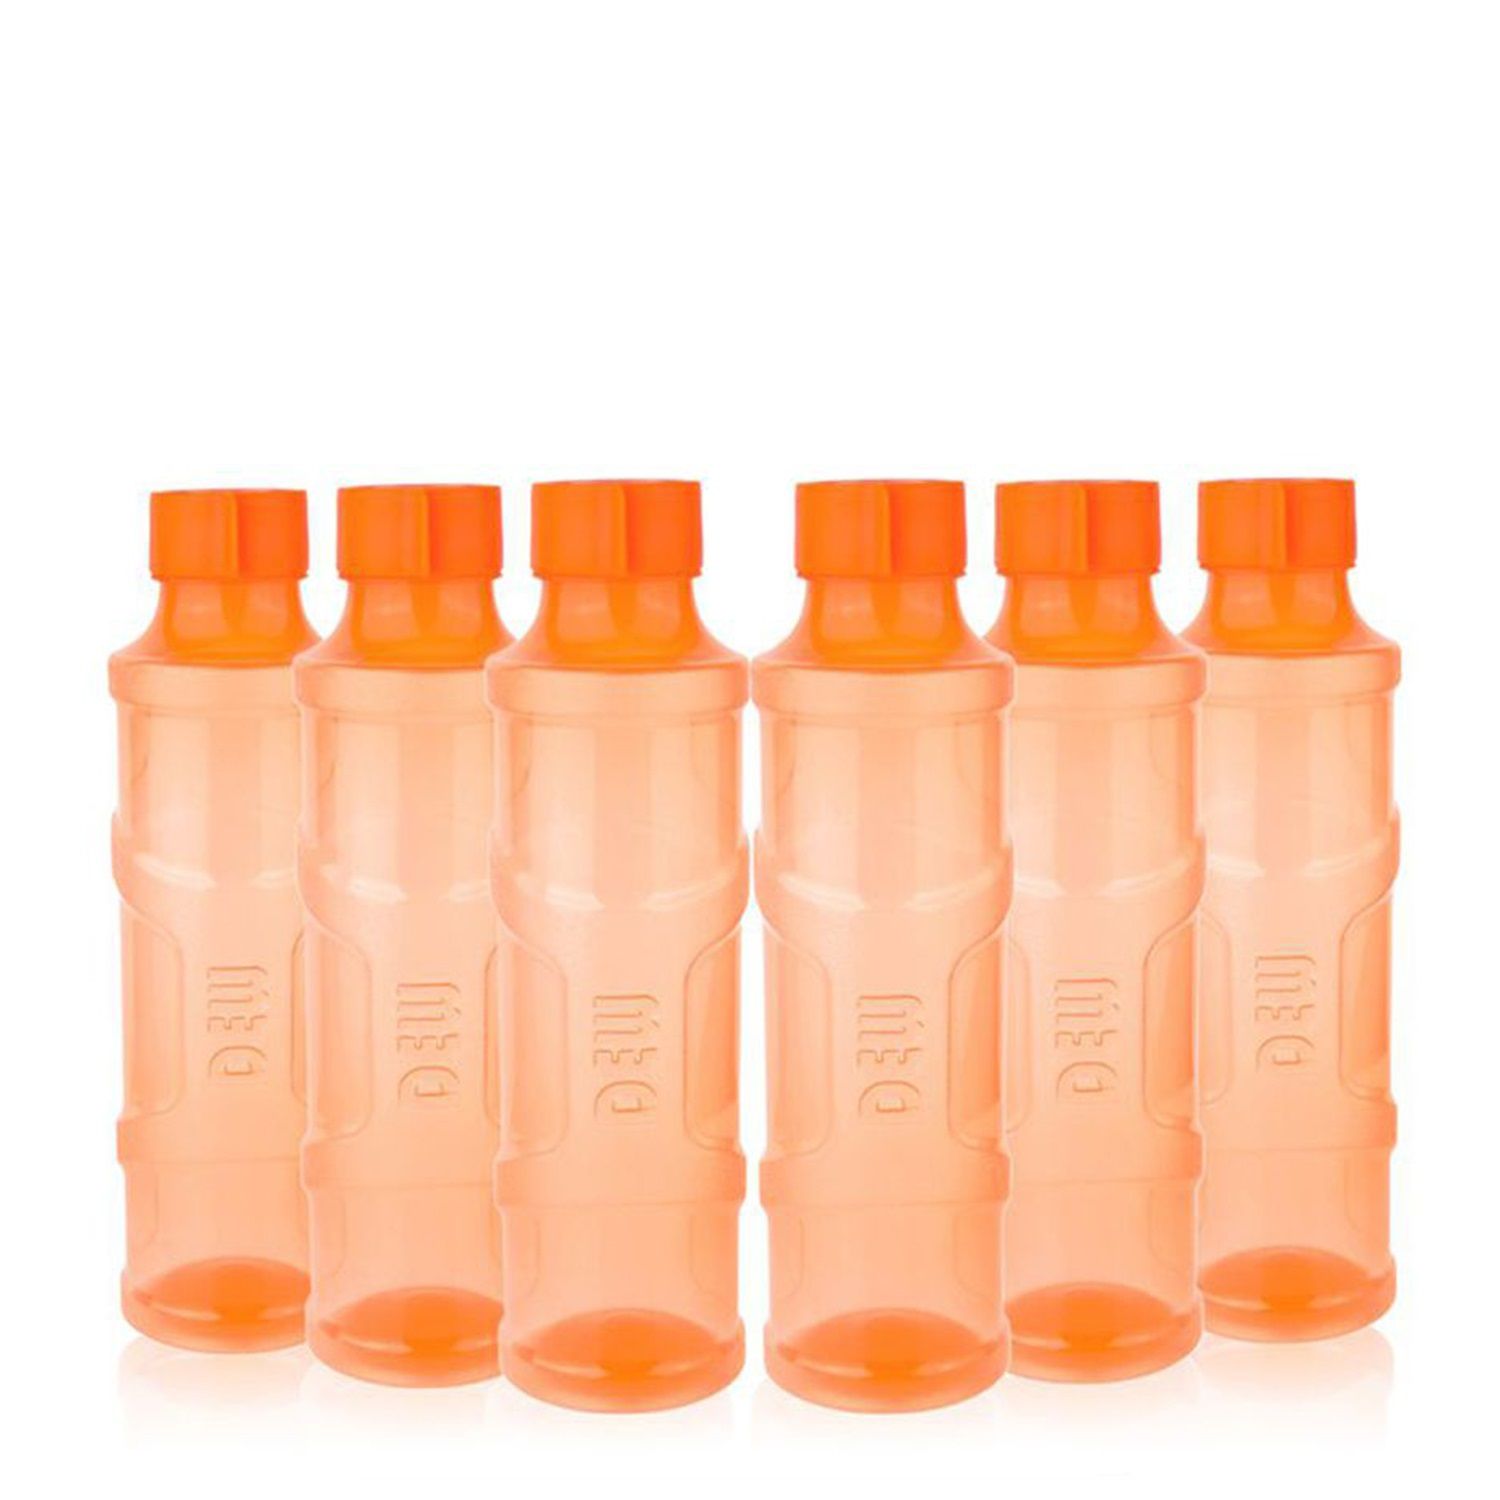     			Gluman Dew Fridge Bottle Pack of 6, Orange color, 1000ml each